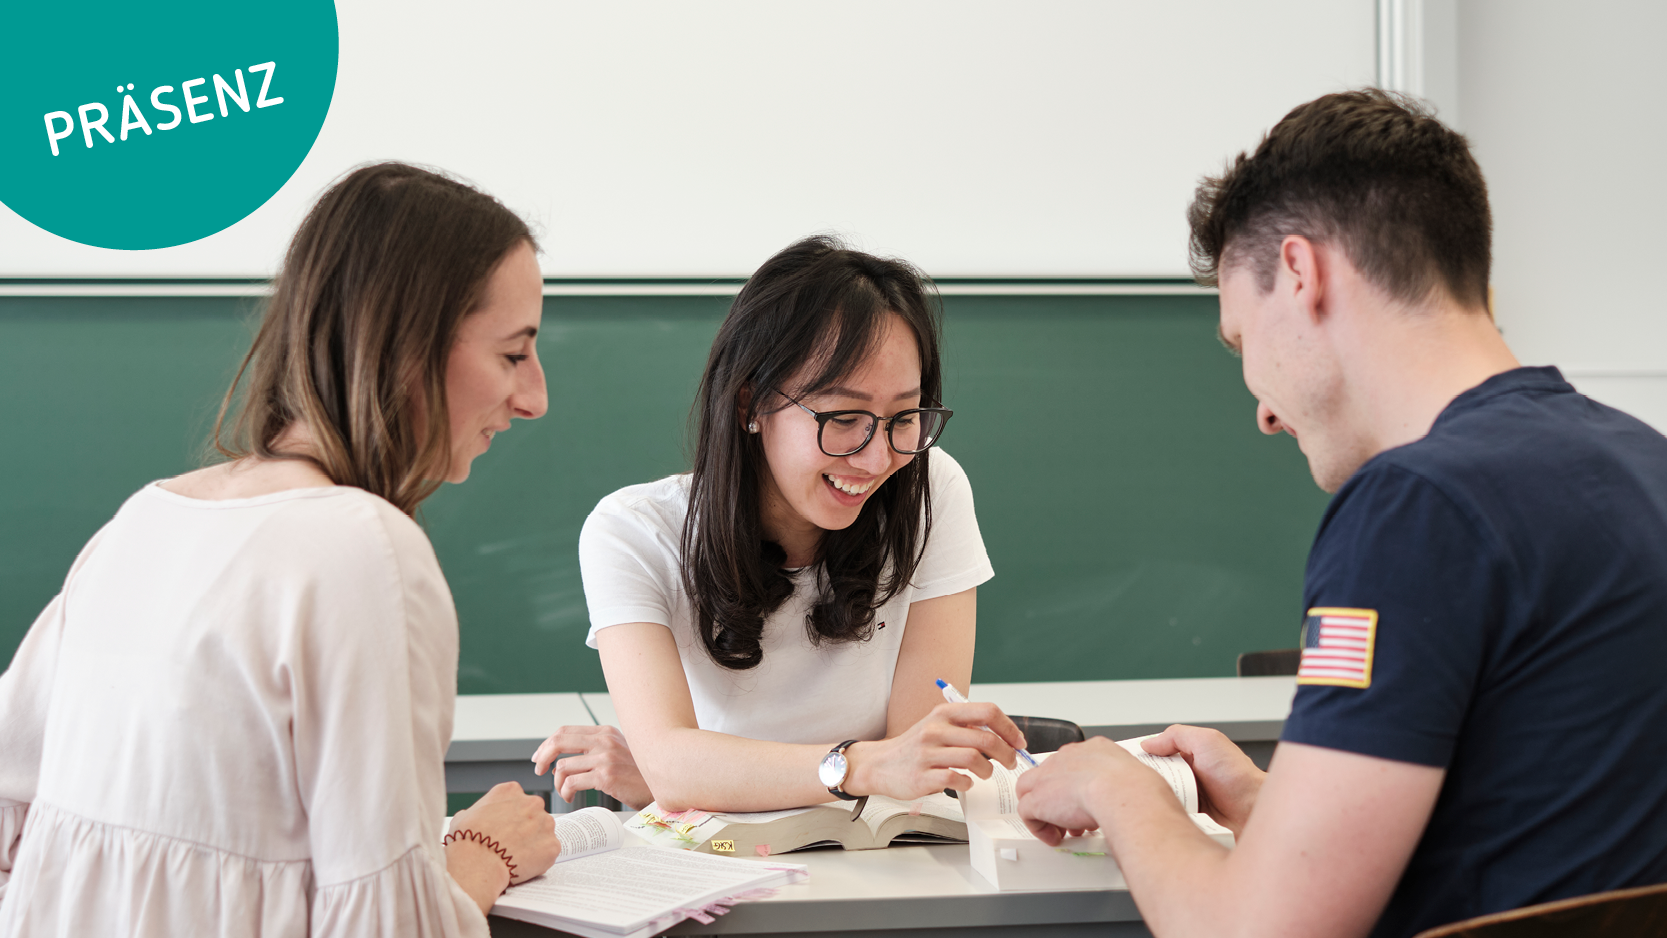 Drei Studierende sitzen im Klassenzimmer und arbeiten gemeinsam